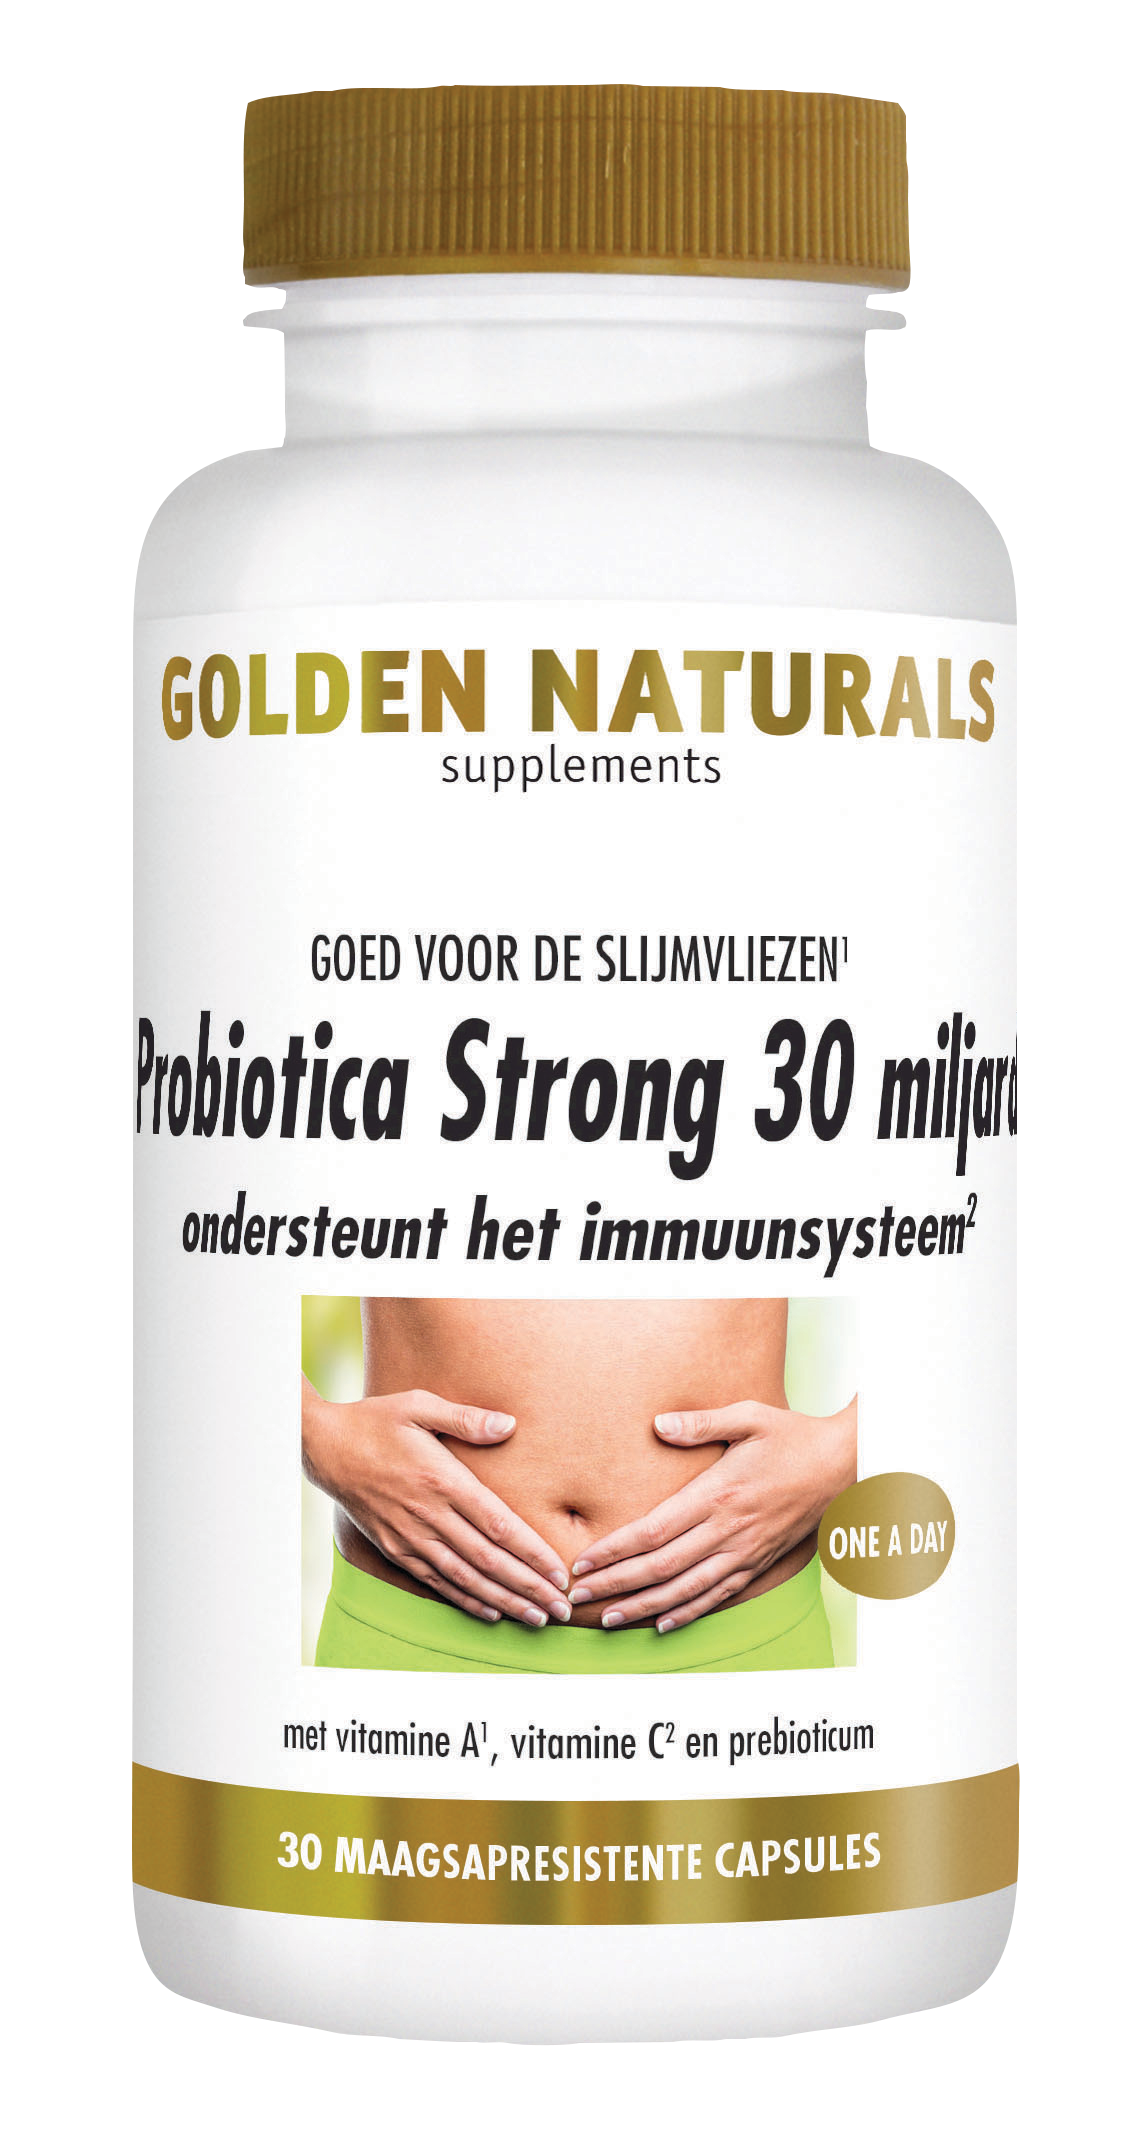 Golden Naturals Probiotica Strong 30 miljard (30 veganistische maagsap